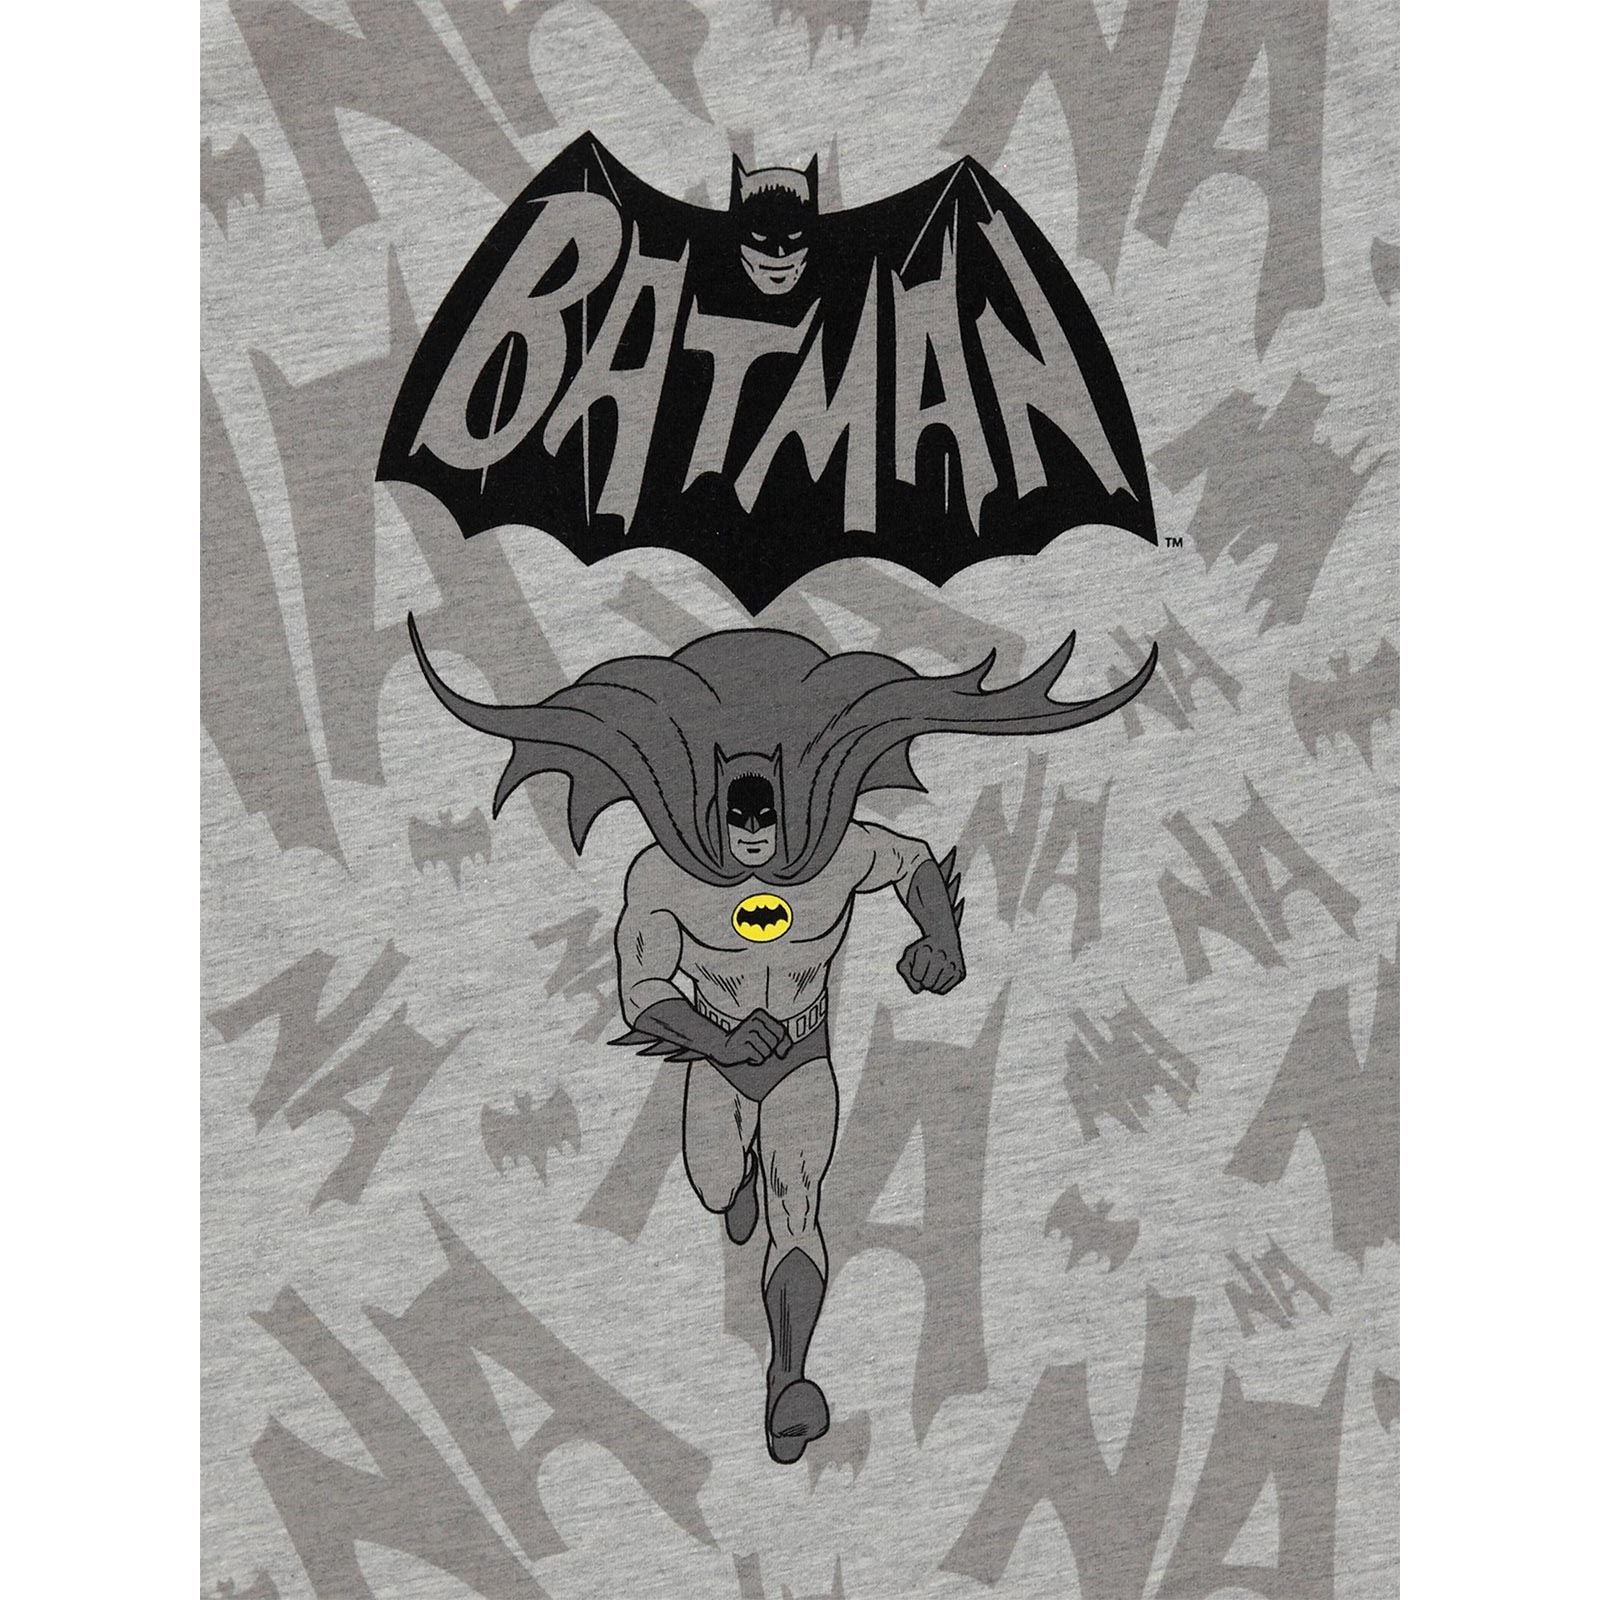 Batman Erkek Çocuk Sweatshirt 6-9 Yaş Gri